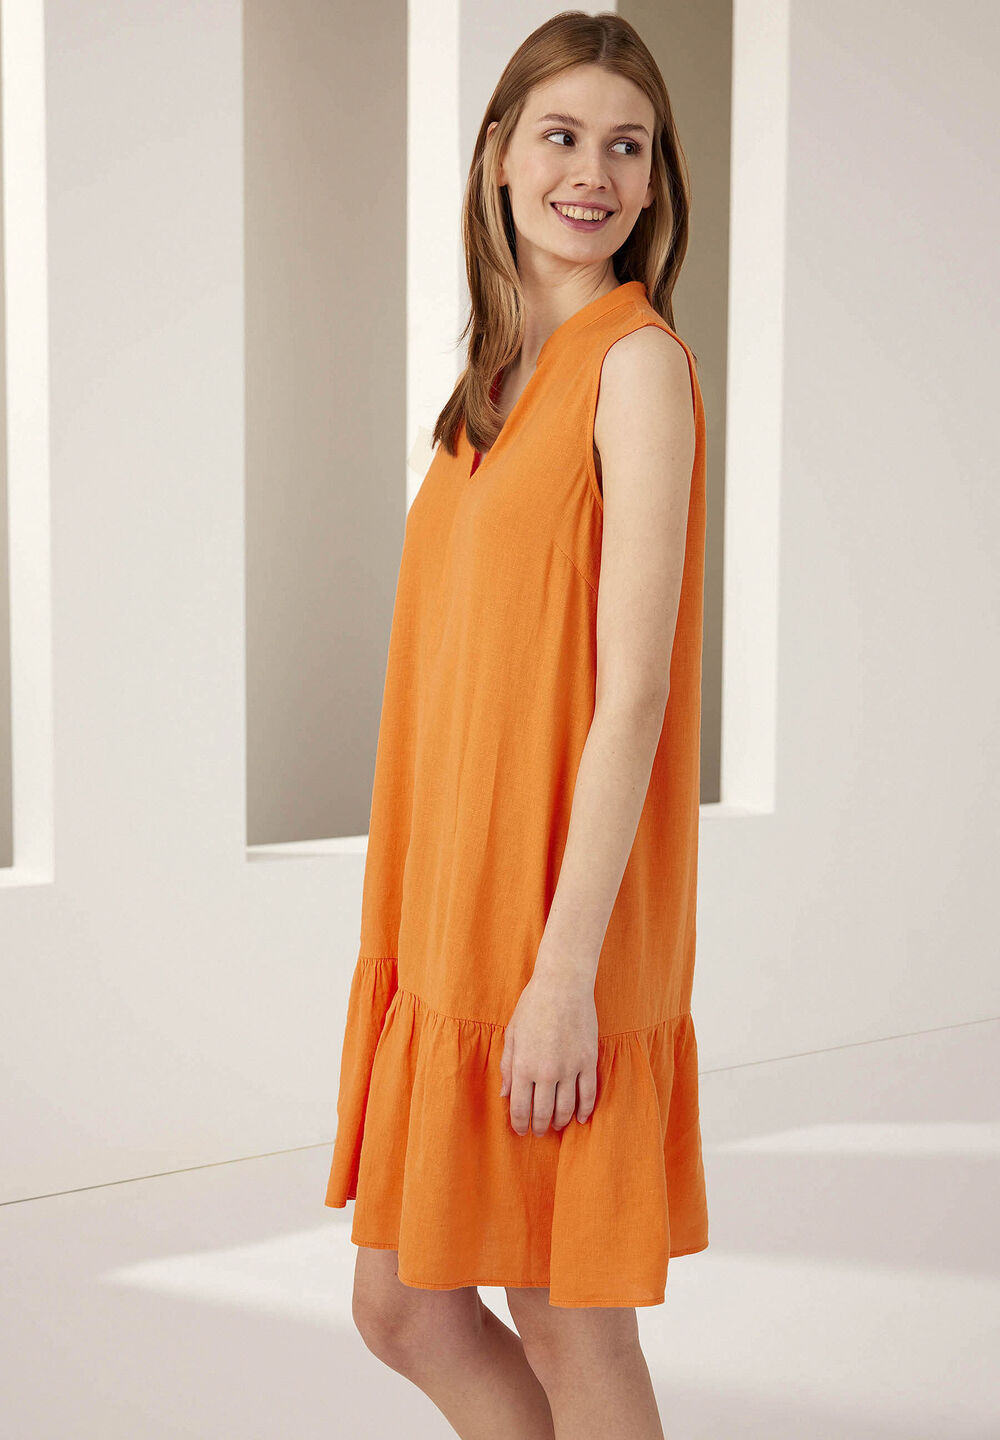 Leinen/Viskose Kleid, fresh orange, Sommer-Kollektion, orange Frontansicht